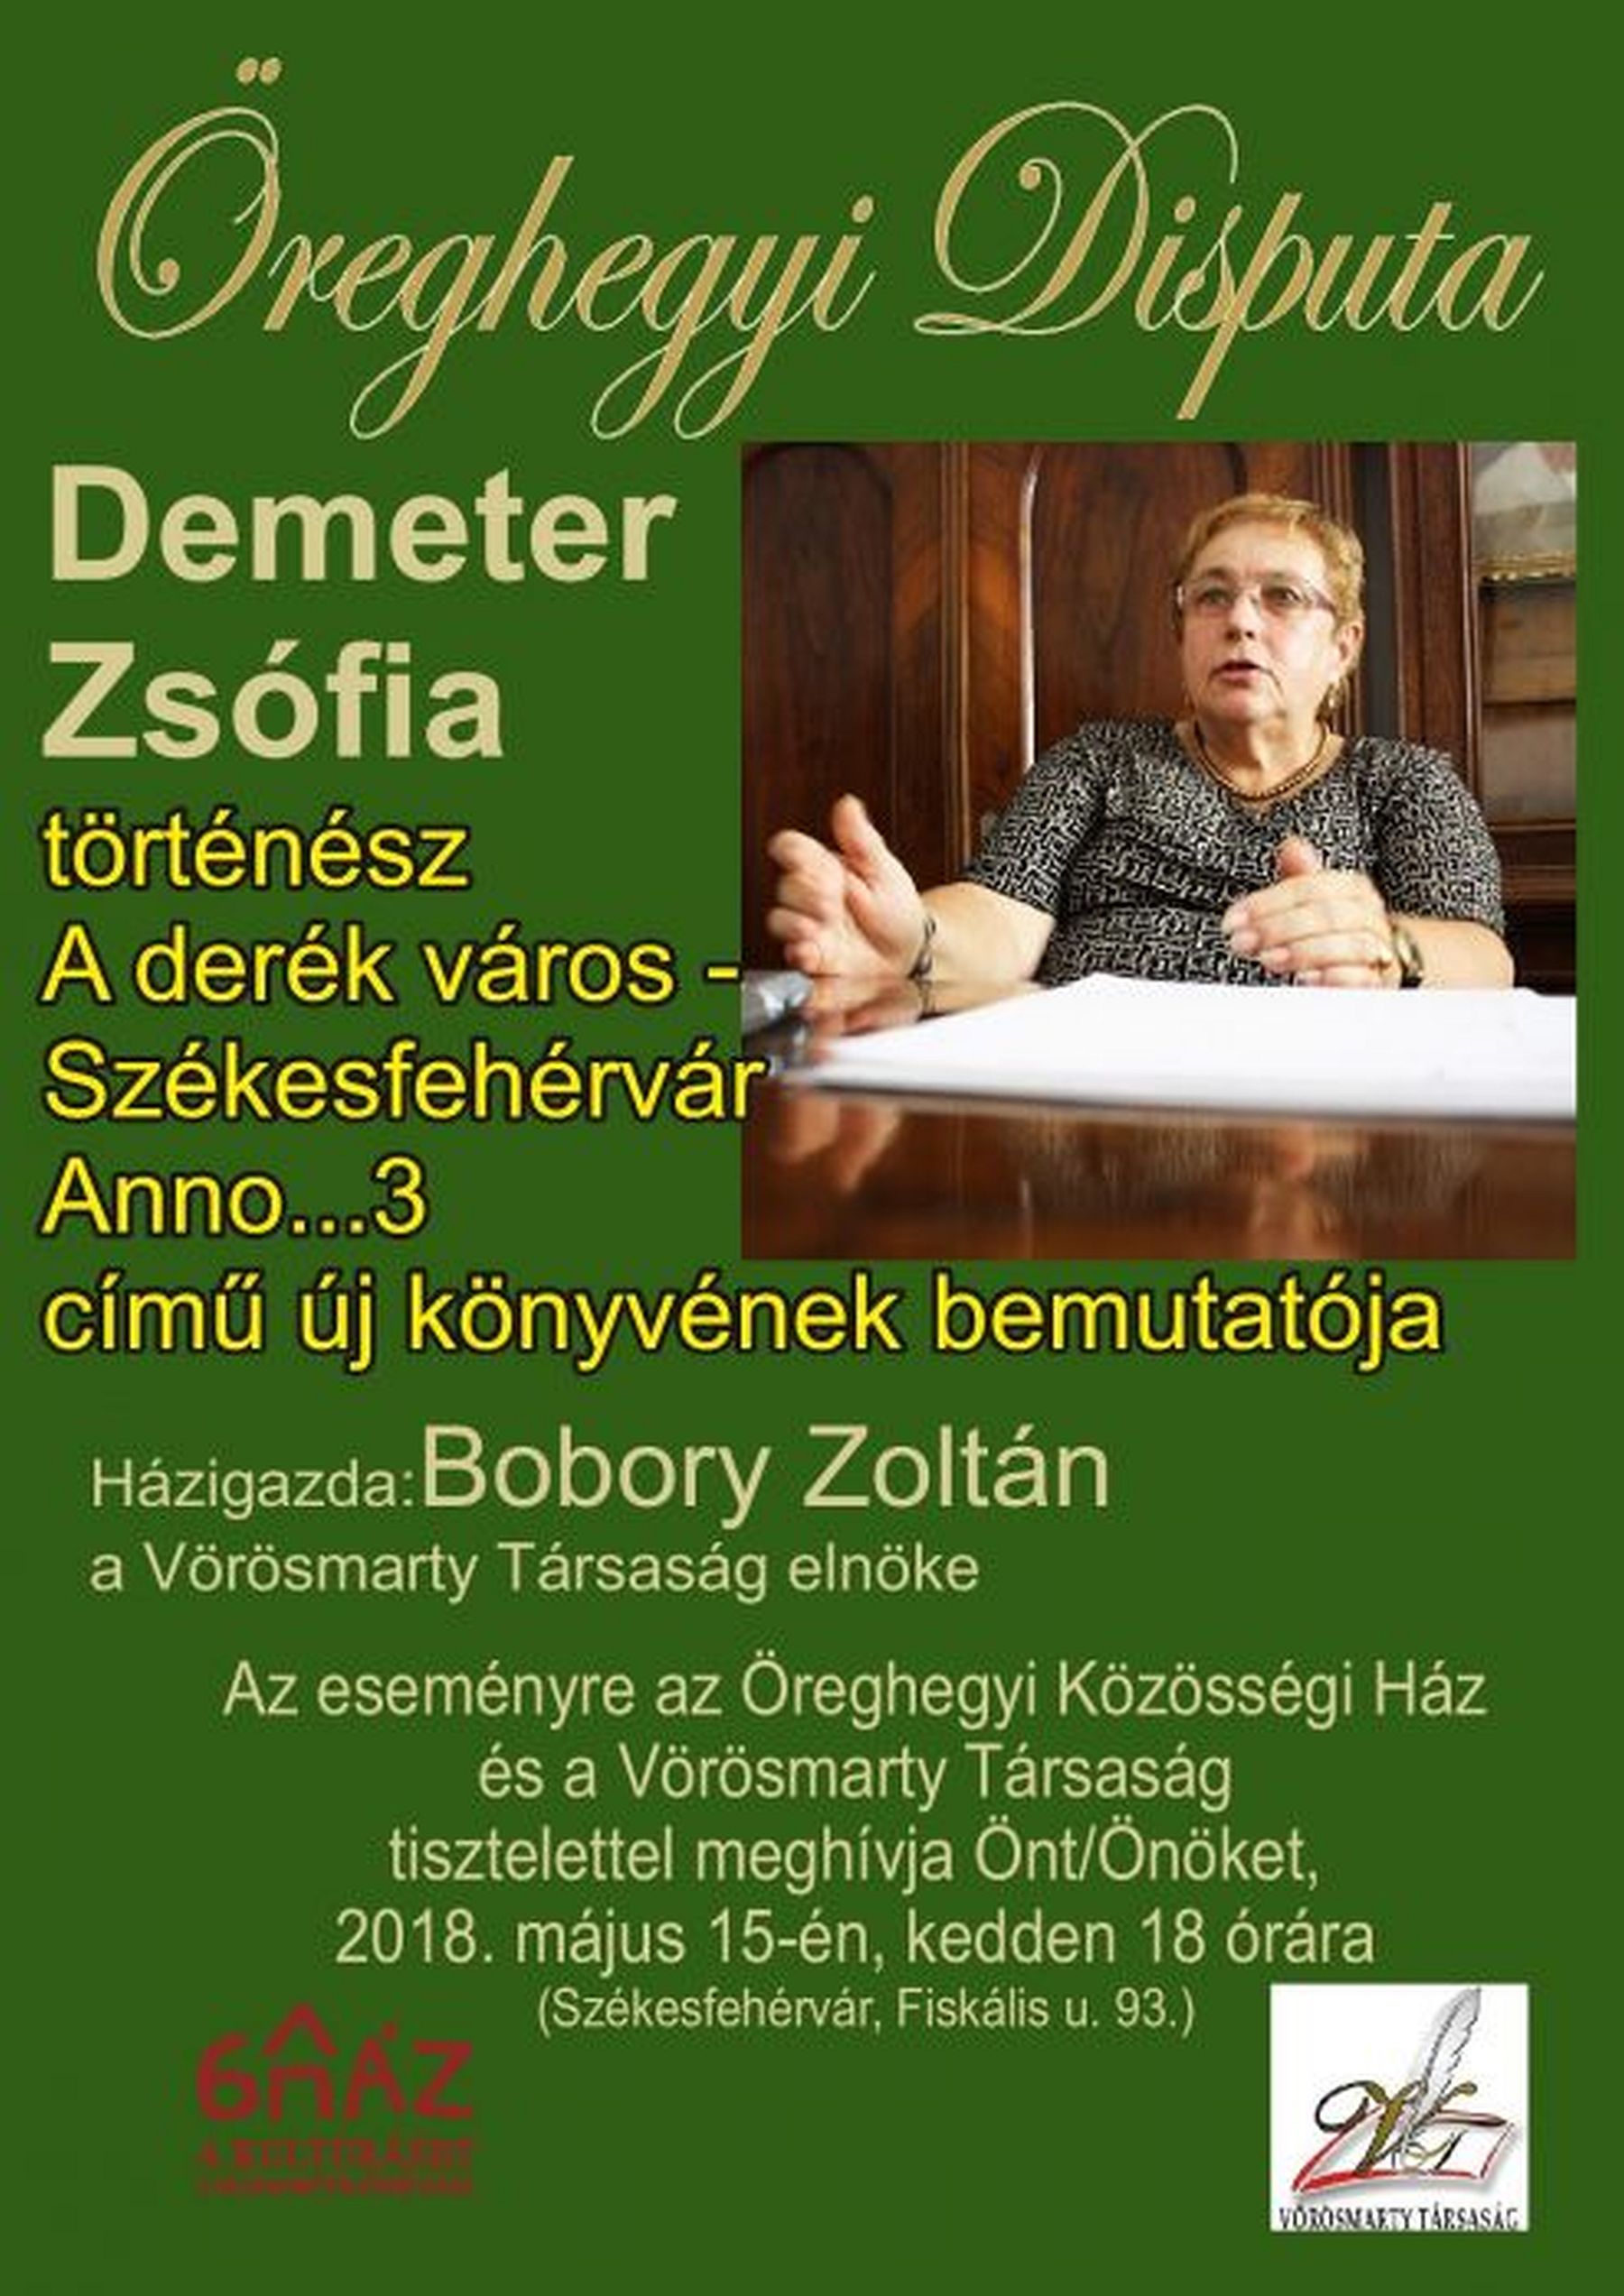 Folytatódik az Öreghegyi Disputa - Dr. Demeter Zsófia lesz a keddi vendég